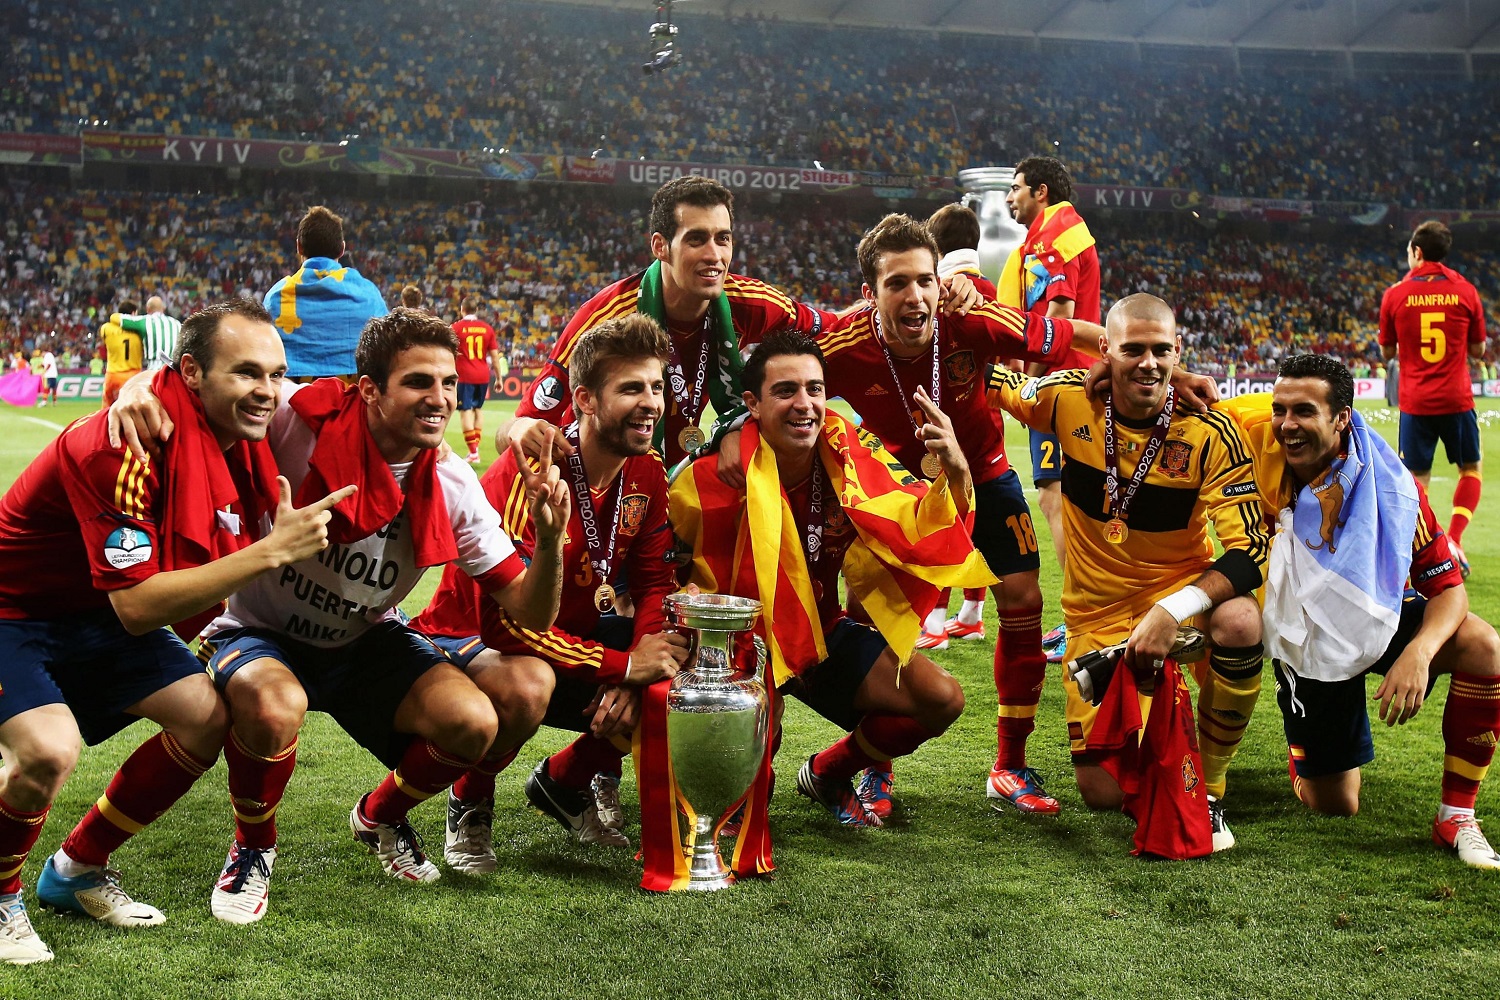 هفت بازیکن بارسلونا و جوردی آلبا پس از قهرمانی در یورو 2012